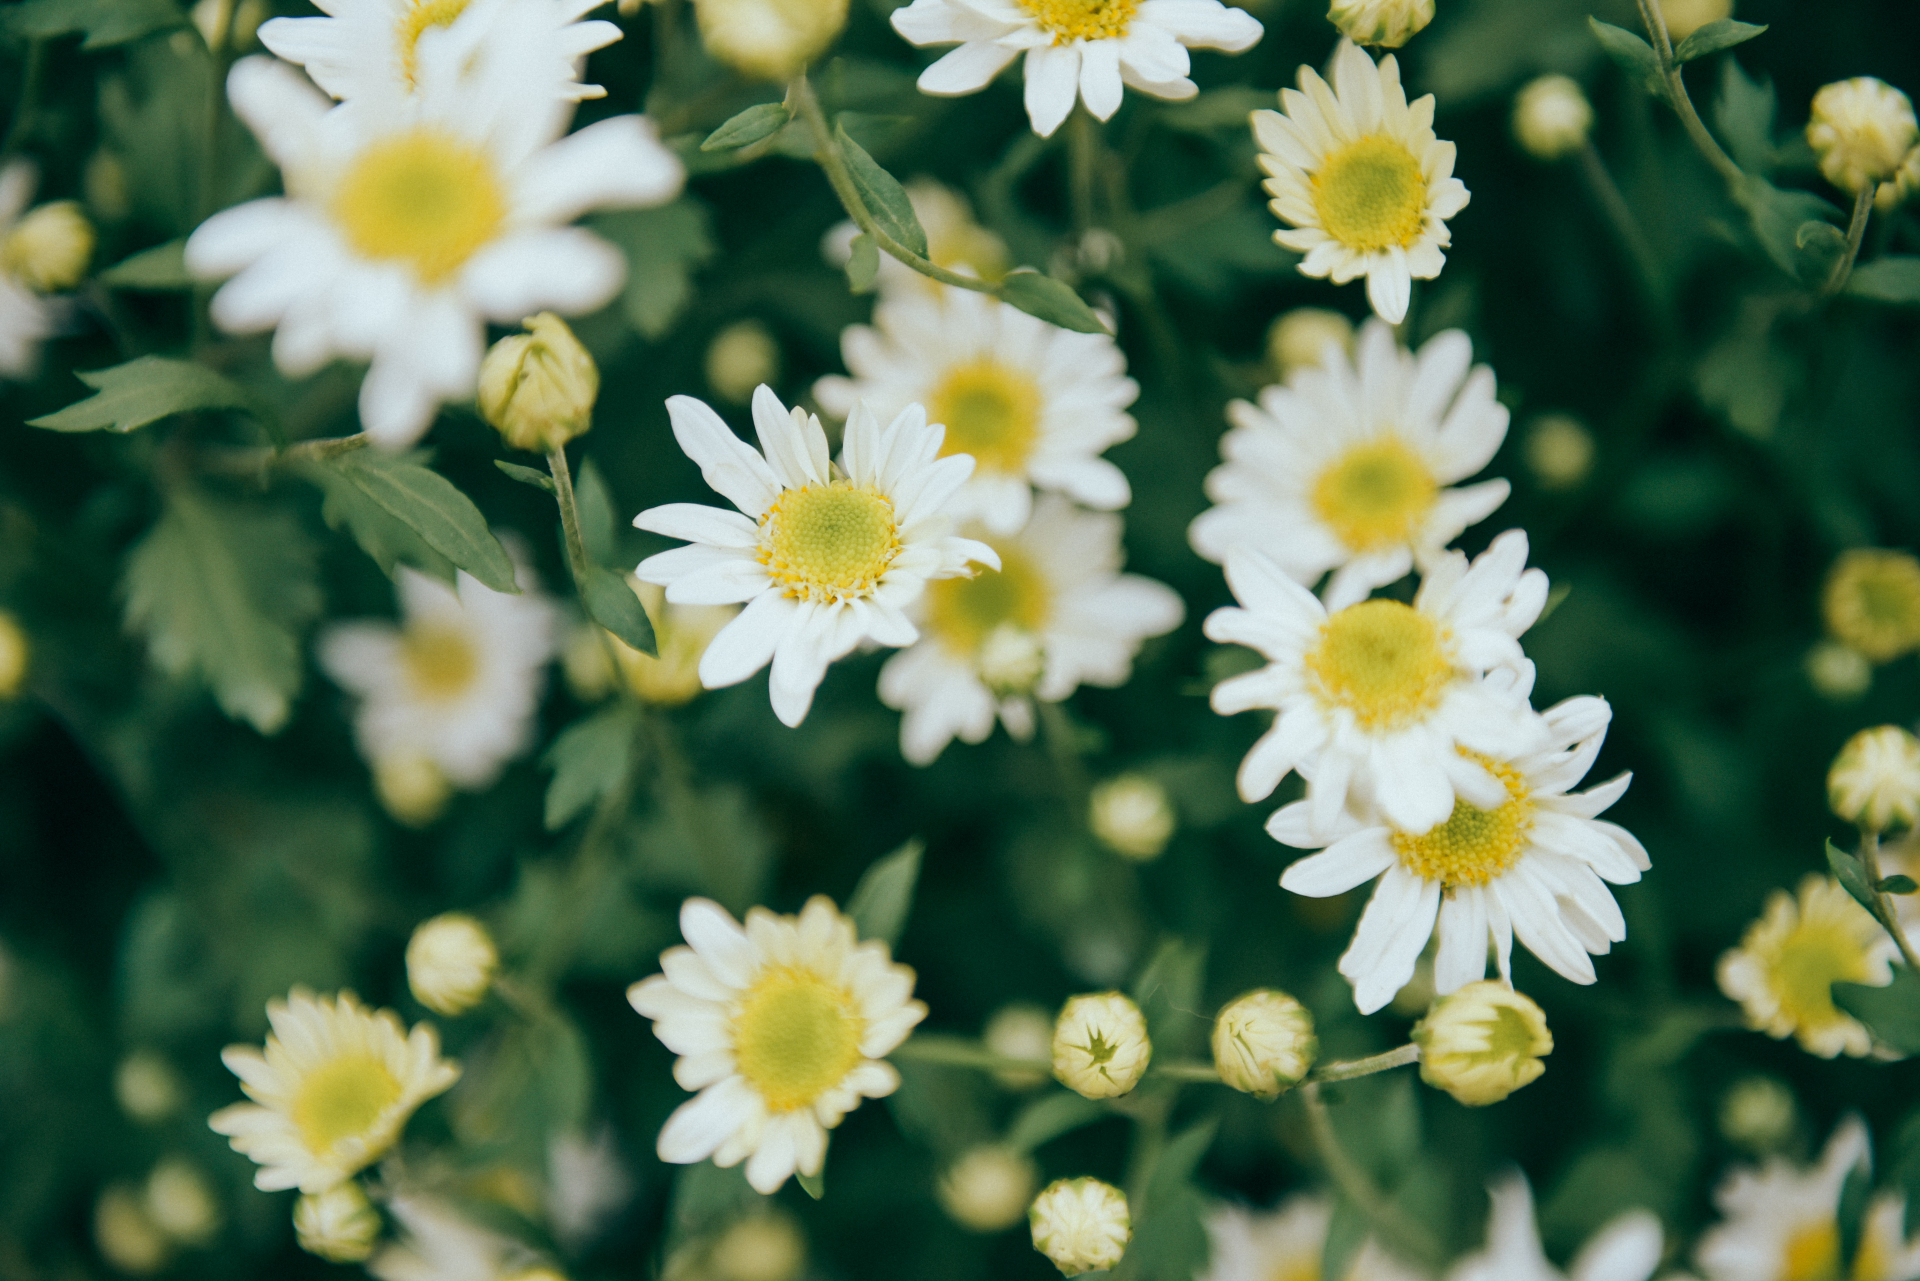 Cúc họa mi là loài hoa nhỏ thường mọc hoang, cánh hoa trắng ngần, hương thơm ngai ngái.